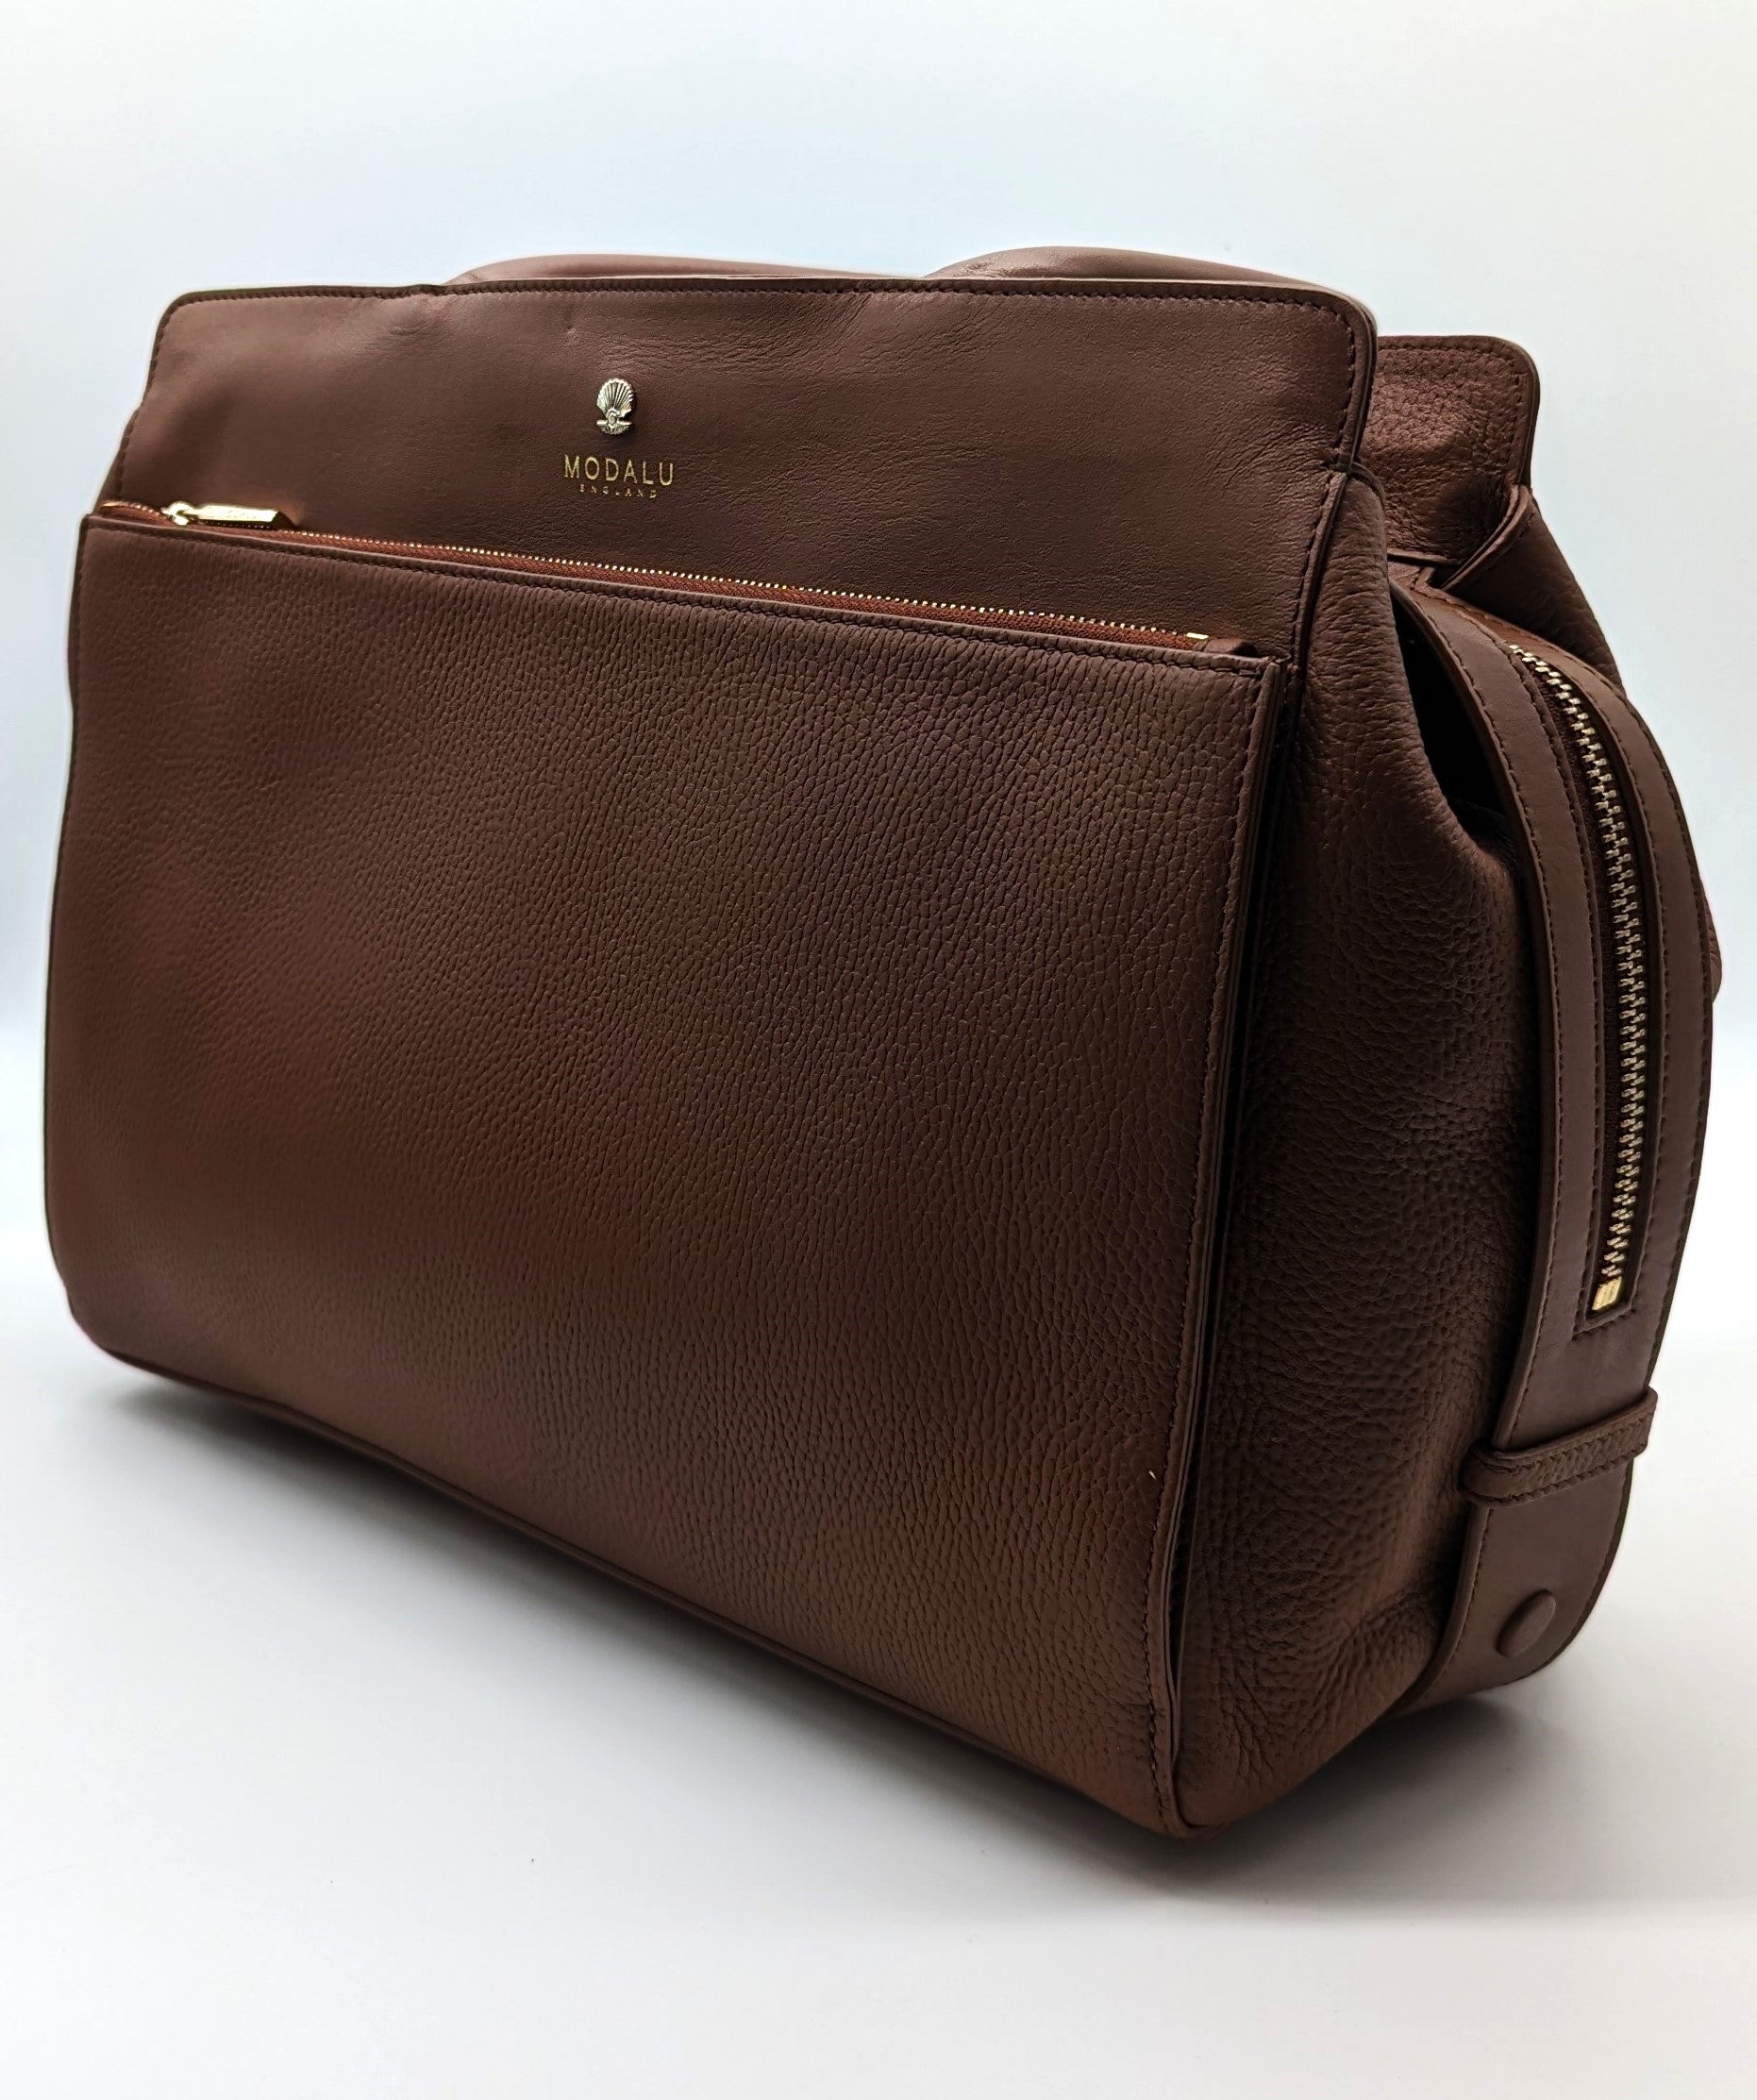 Modalu Berkeley leather small grab bag tan – Runway Accs